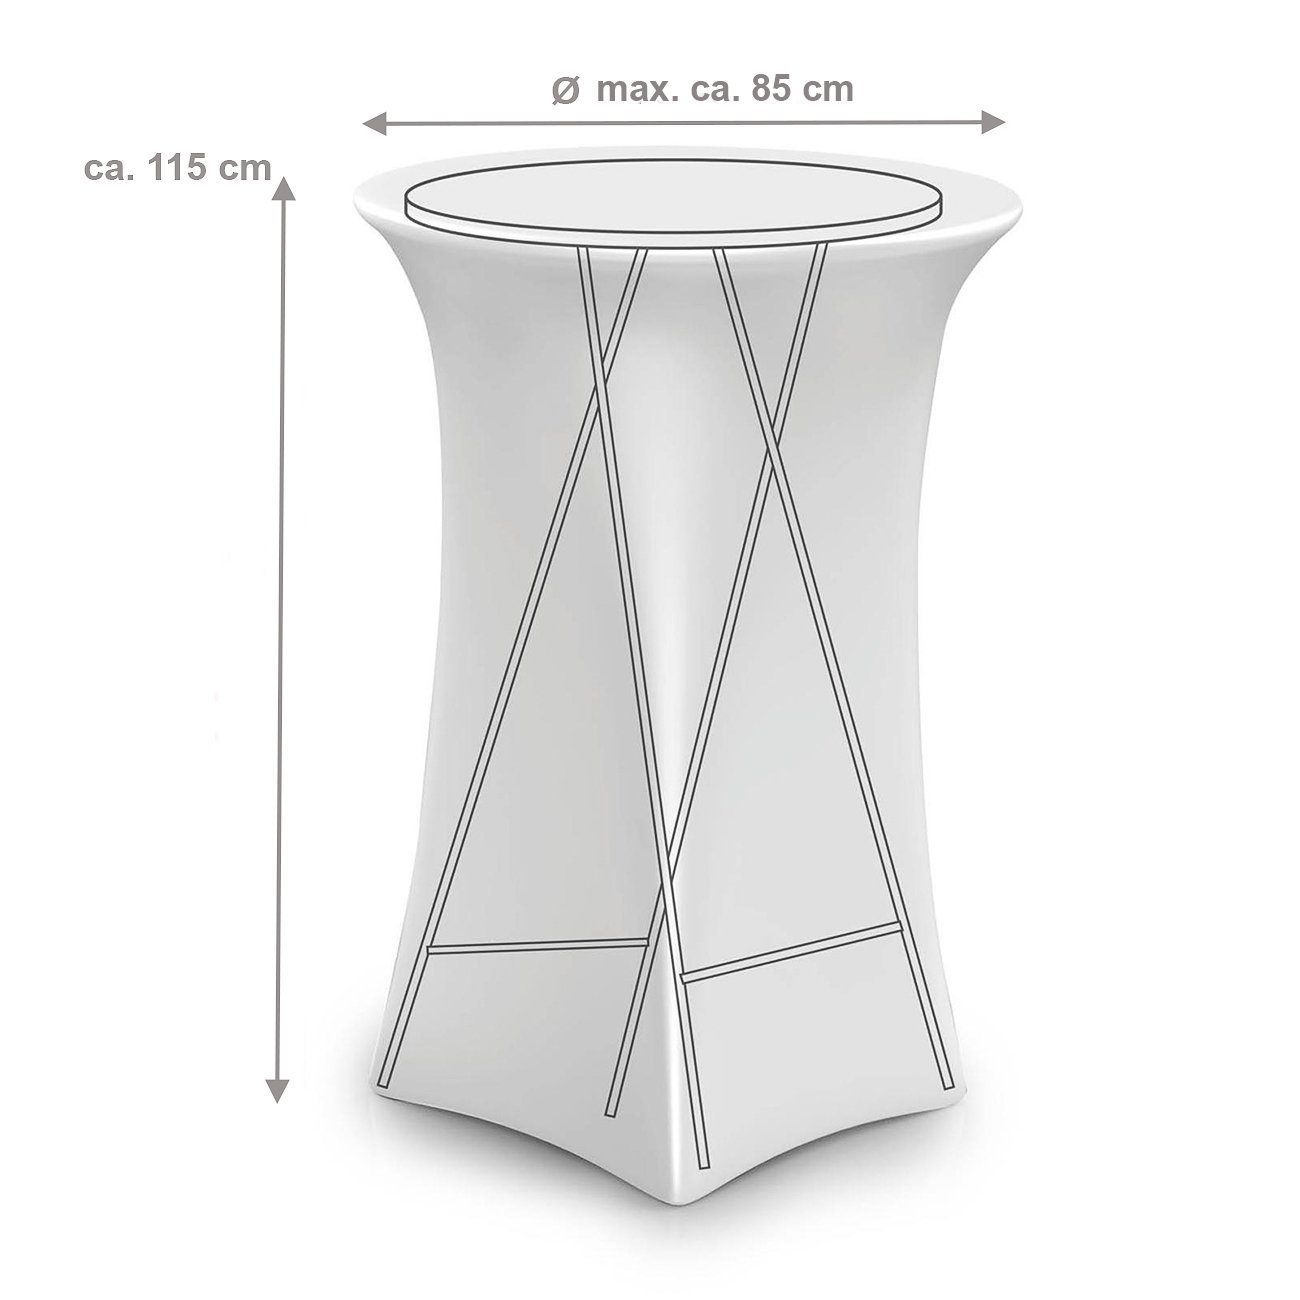 Ø max. Stretc, weiße runde Bubble-Store, cm, Stehtischhusse mit Stretch-Bezug für Tischhusse, Tischplatten Tischverkleidung Stehtischhusse 85 ca. von